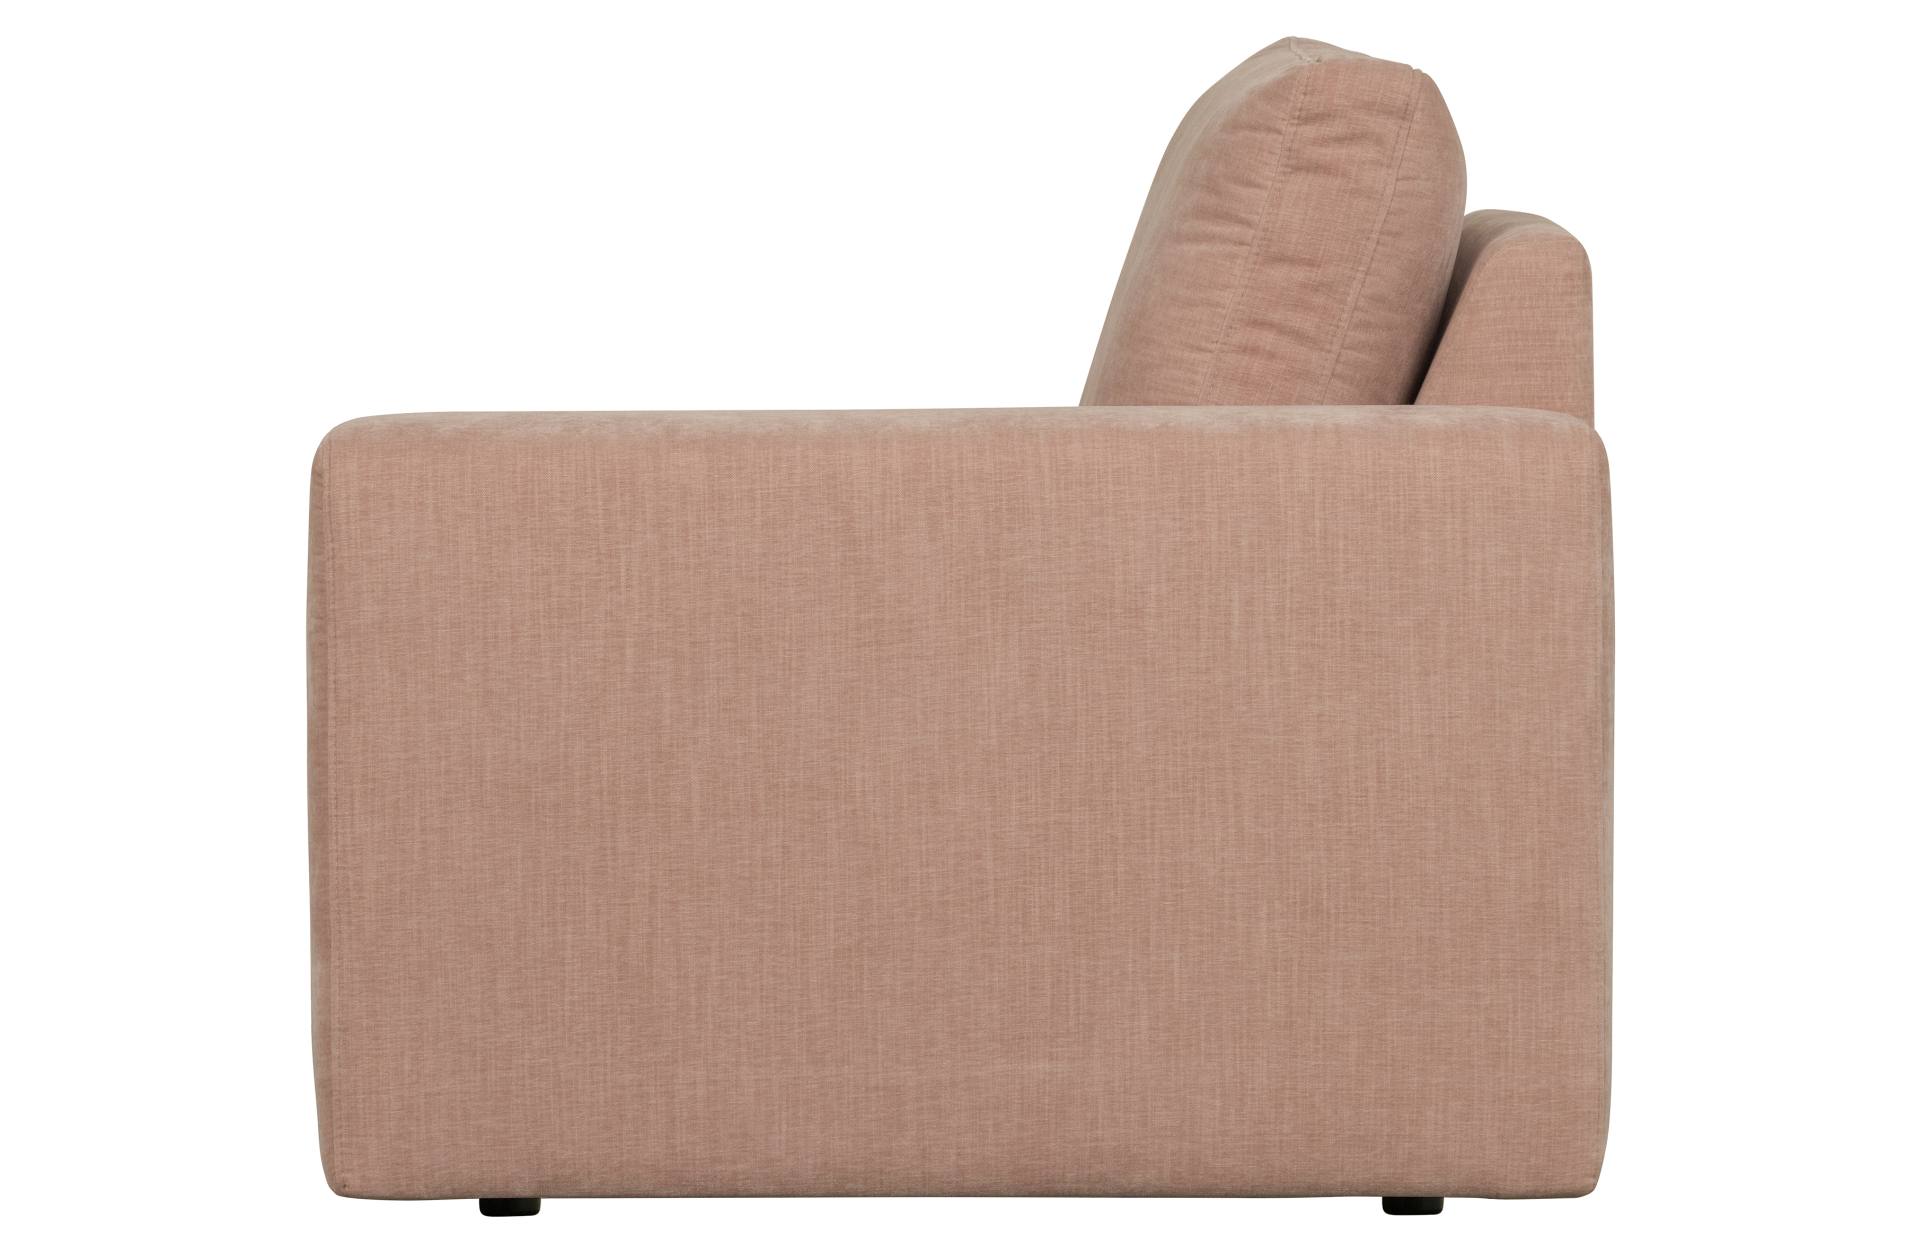 Das Modulsofa Family überzeugt mit seinem modernen Design. Das 1-Seat Element mit der Ausführung Rechts wurde aus Gewebe-Stoff gefertigt, welcher einen einen rosa Farbton besitzen. Das Gestell ist aus Metall und hat eine schwarze Farbe. Das Element hat ei